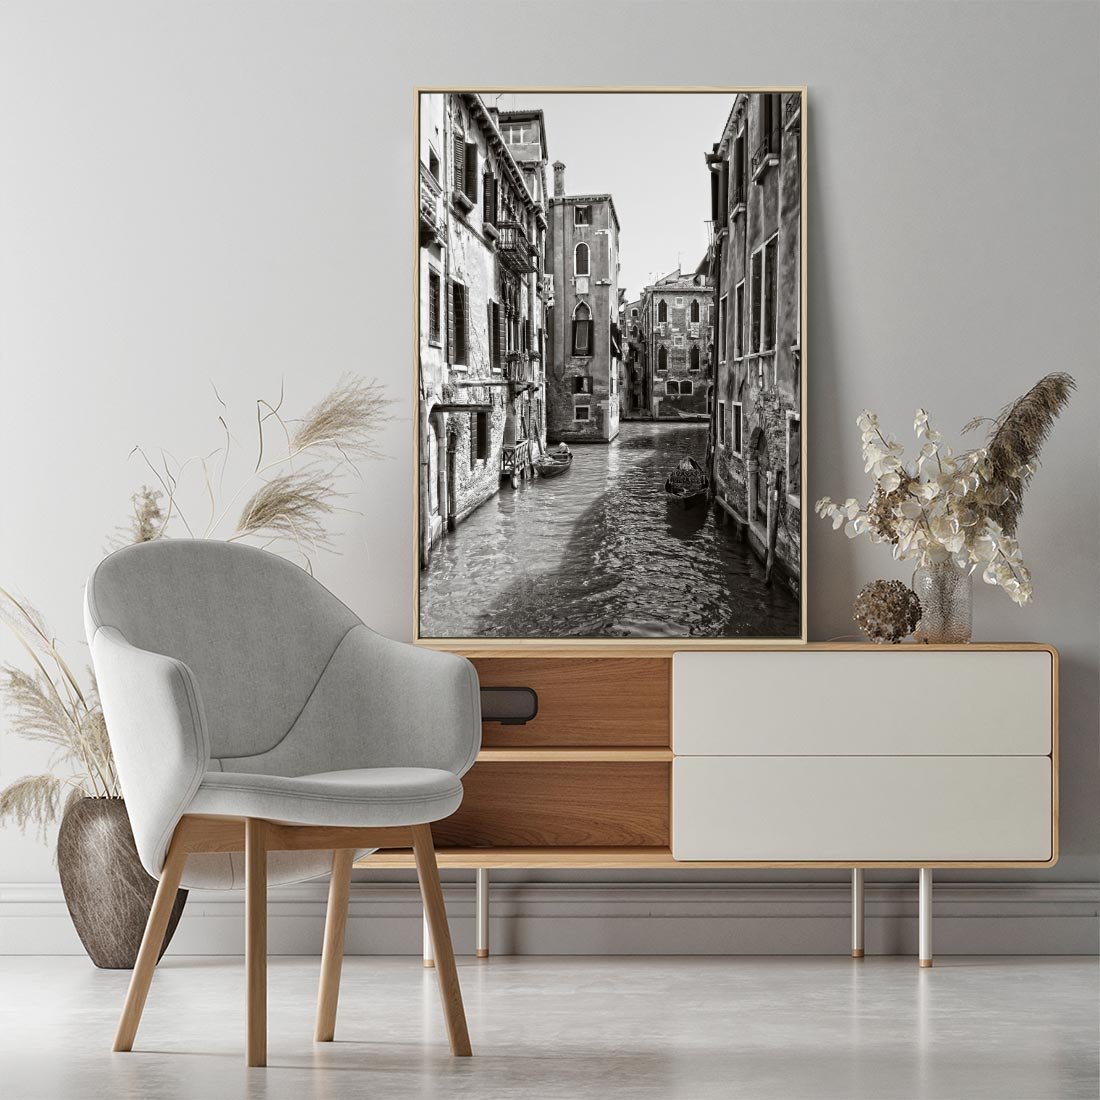 Obraz w ramie 50x70 - Weneckie Kanały - czarno białe zdjęcie, wenecja - rama drewno